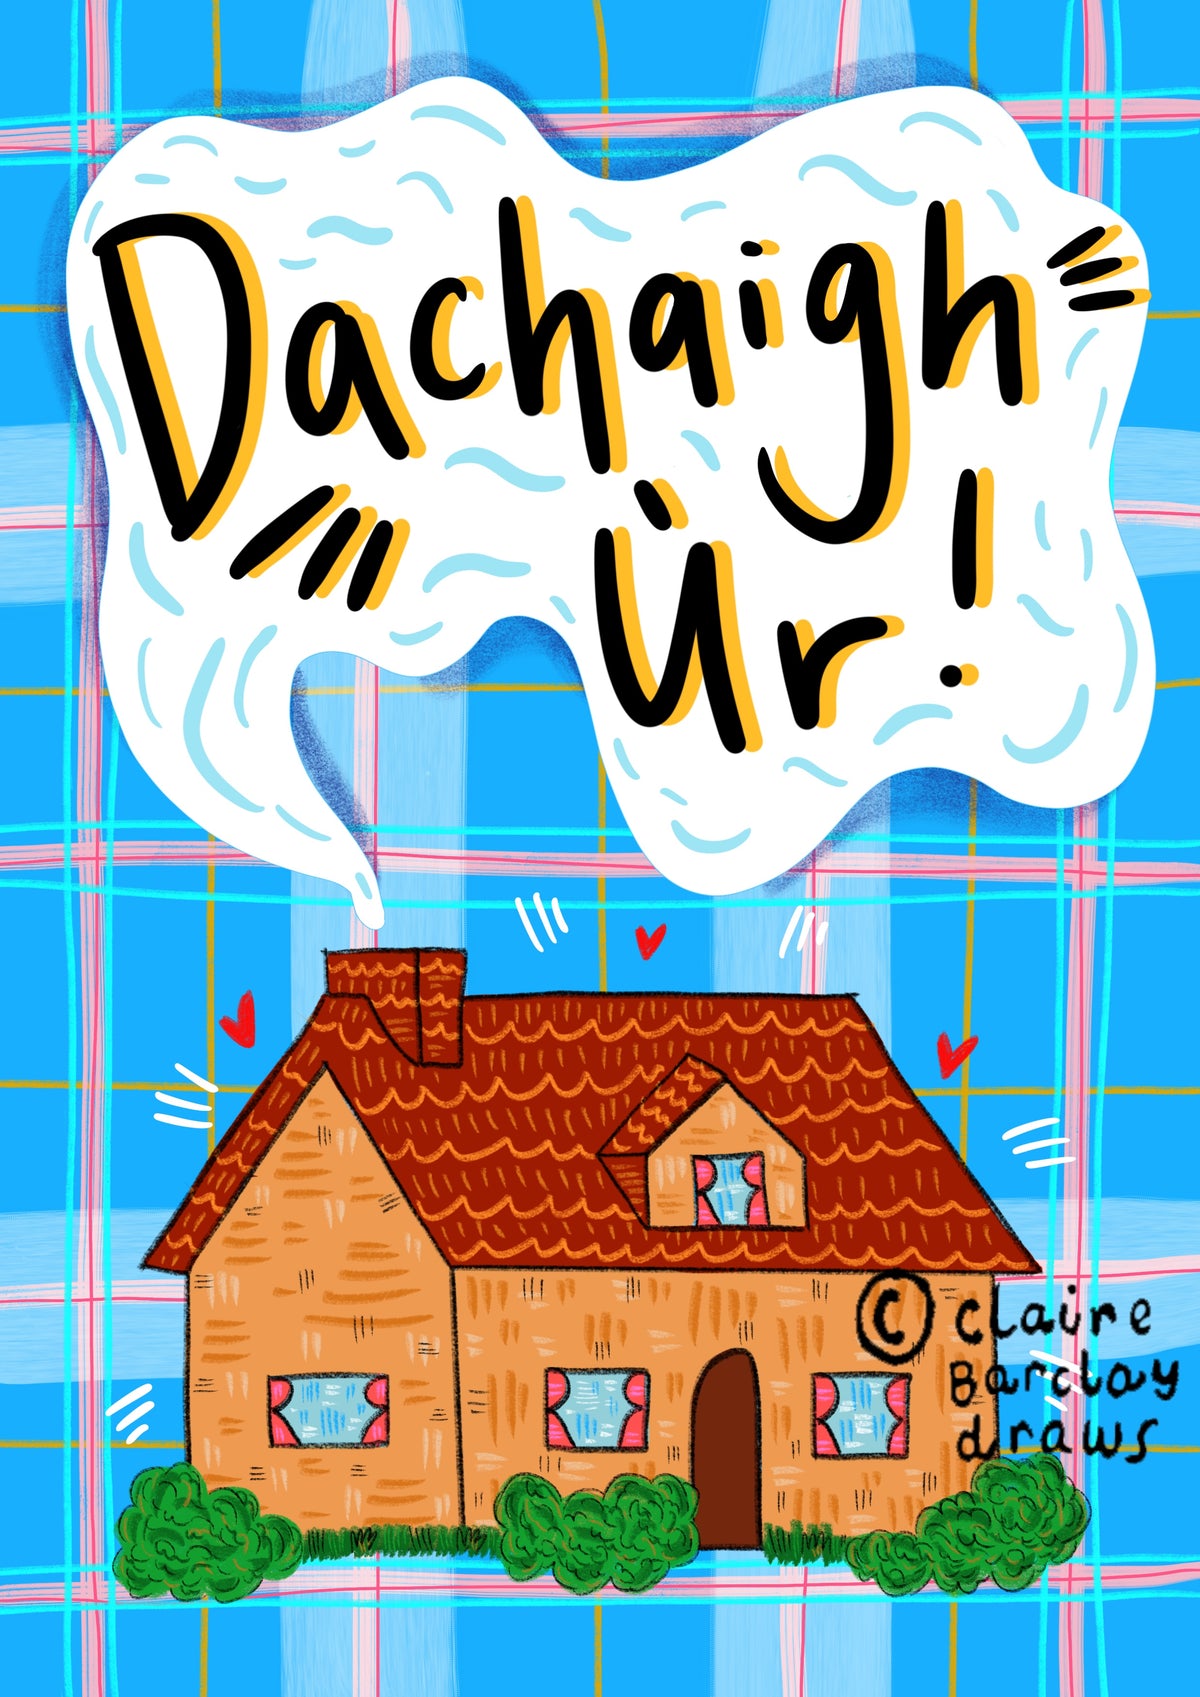 Dachaigh Ur Scots Gaelic New Home Card